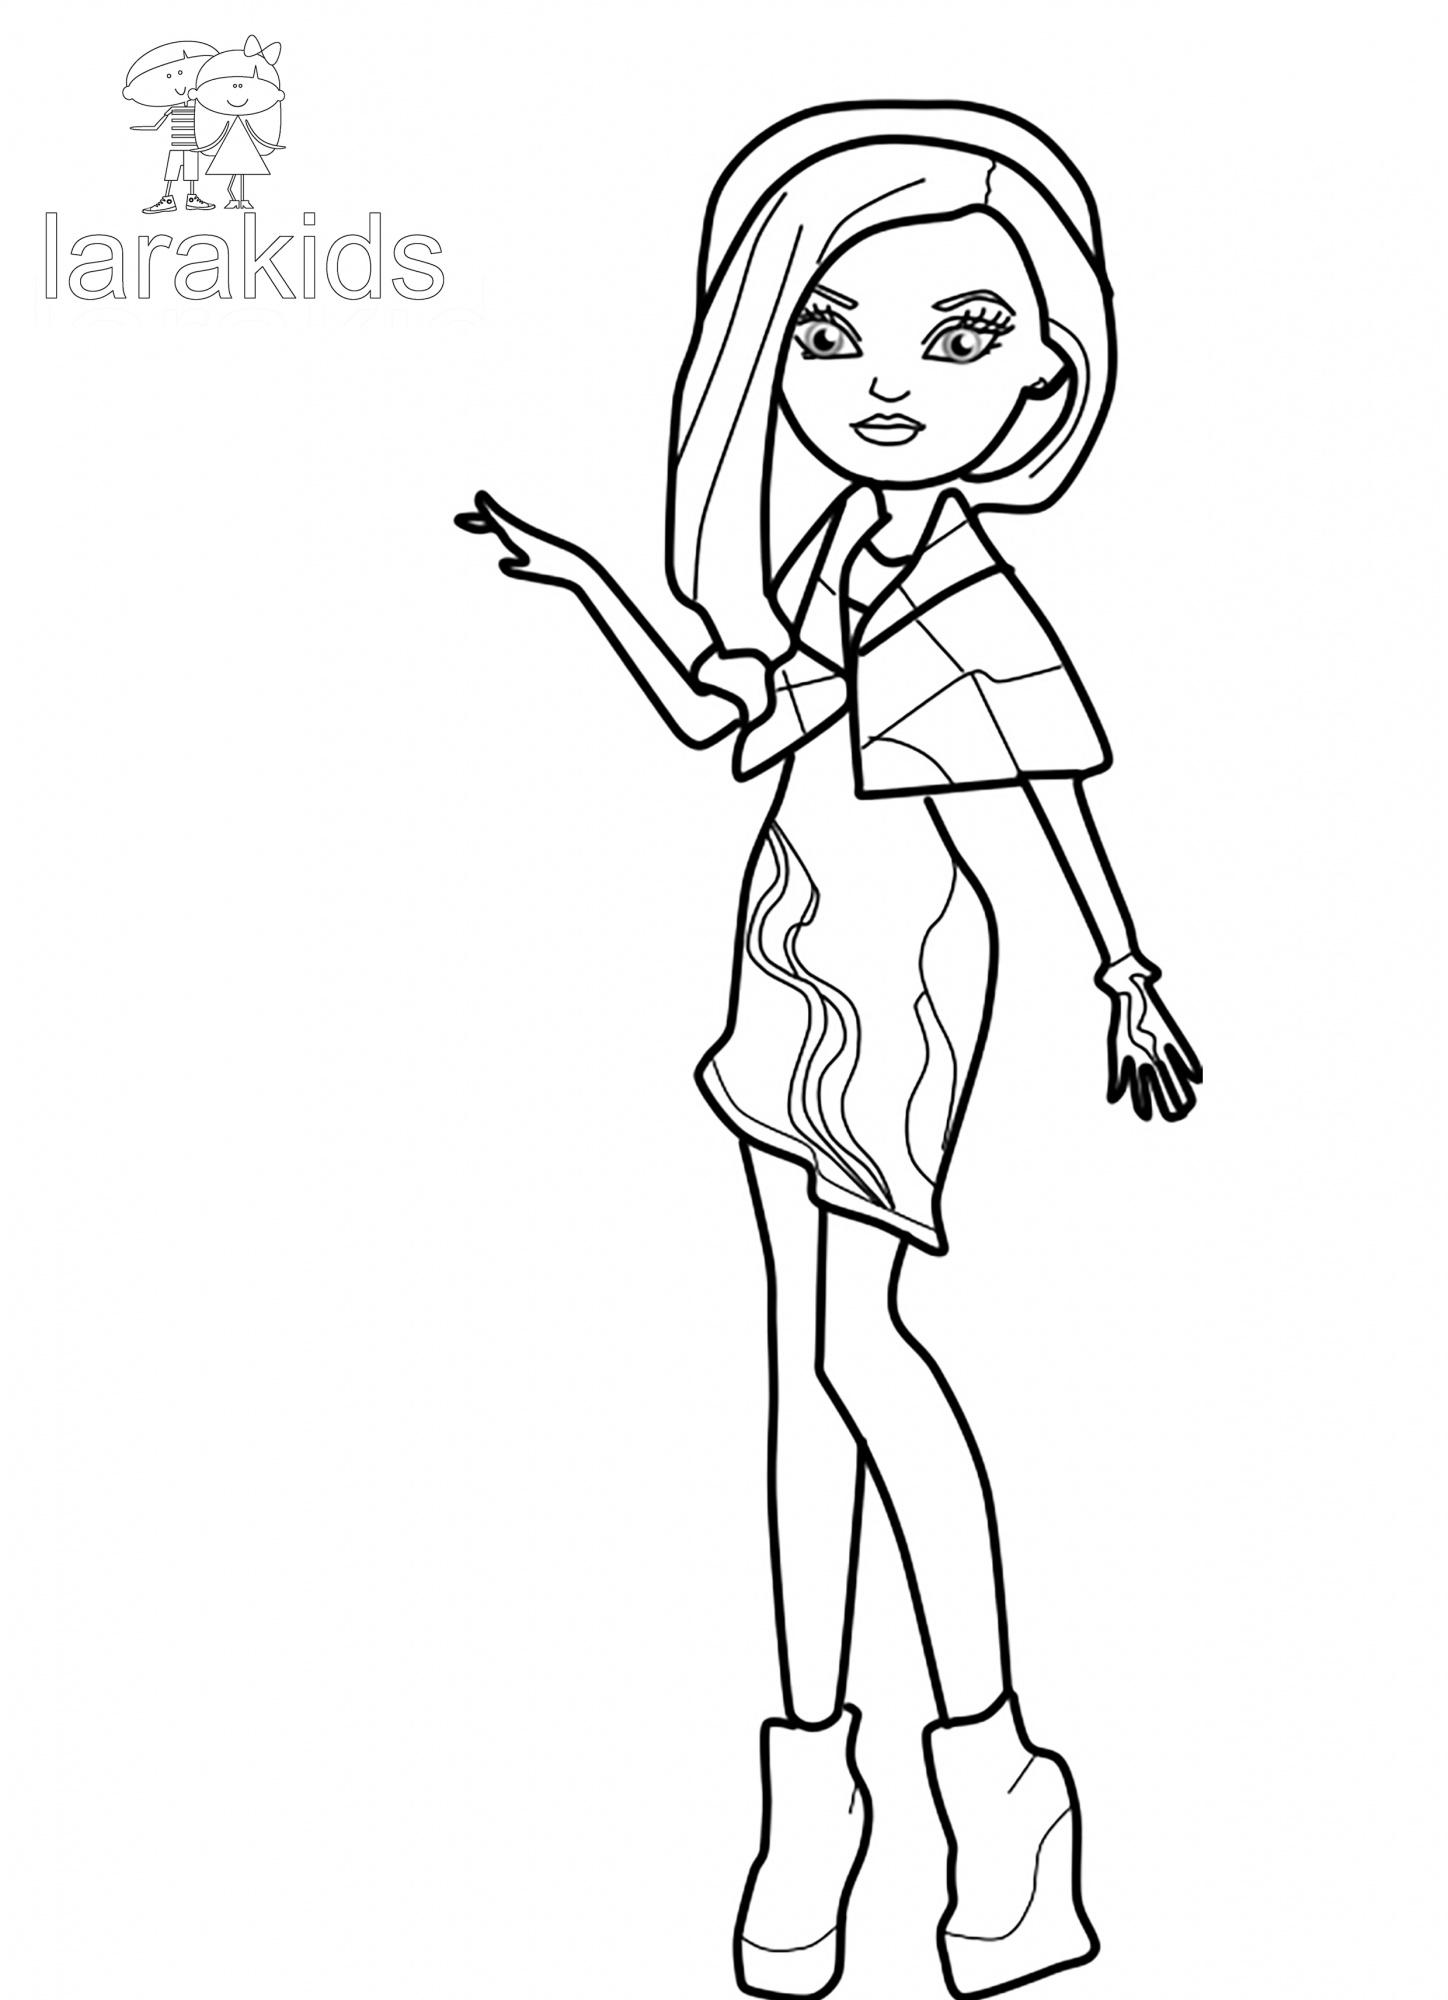 Раскраски с серии кукол Эвер Афтер Хай, раскраски девочек по мультфильму Эвер Афтер Хай  Раскраска кукла из серии Эвер Афтер Хай